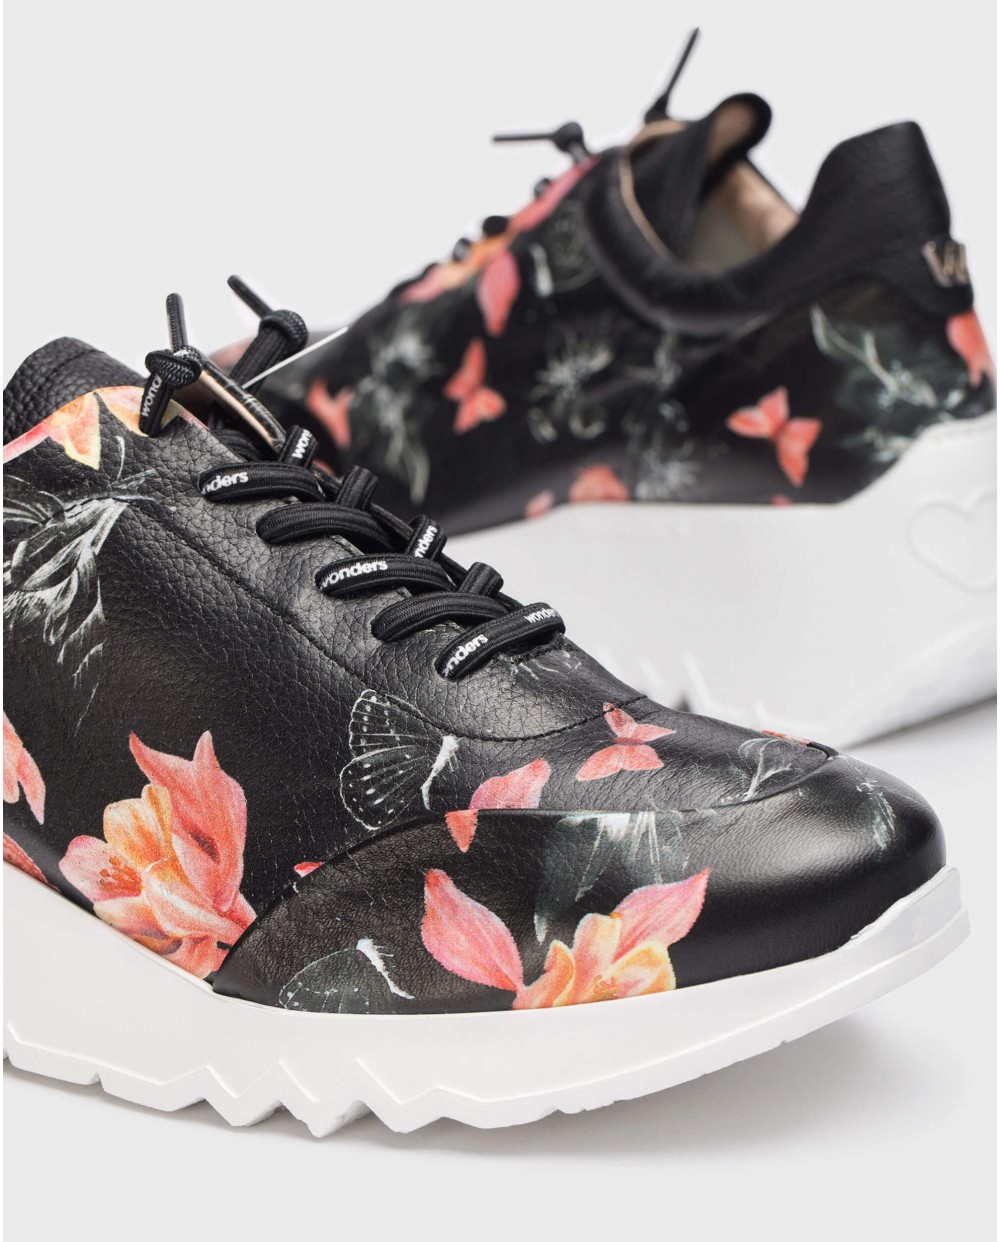 Wonders-Sneakers-Floral Glam Sneaker